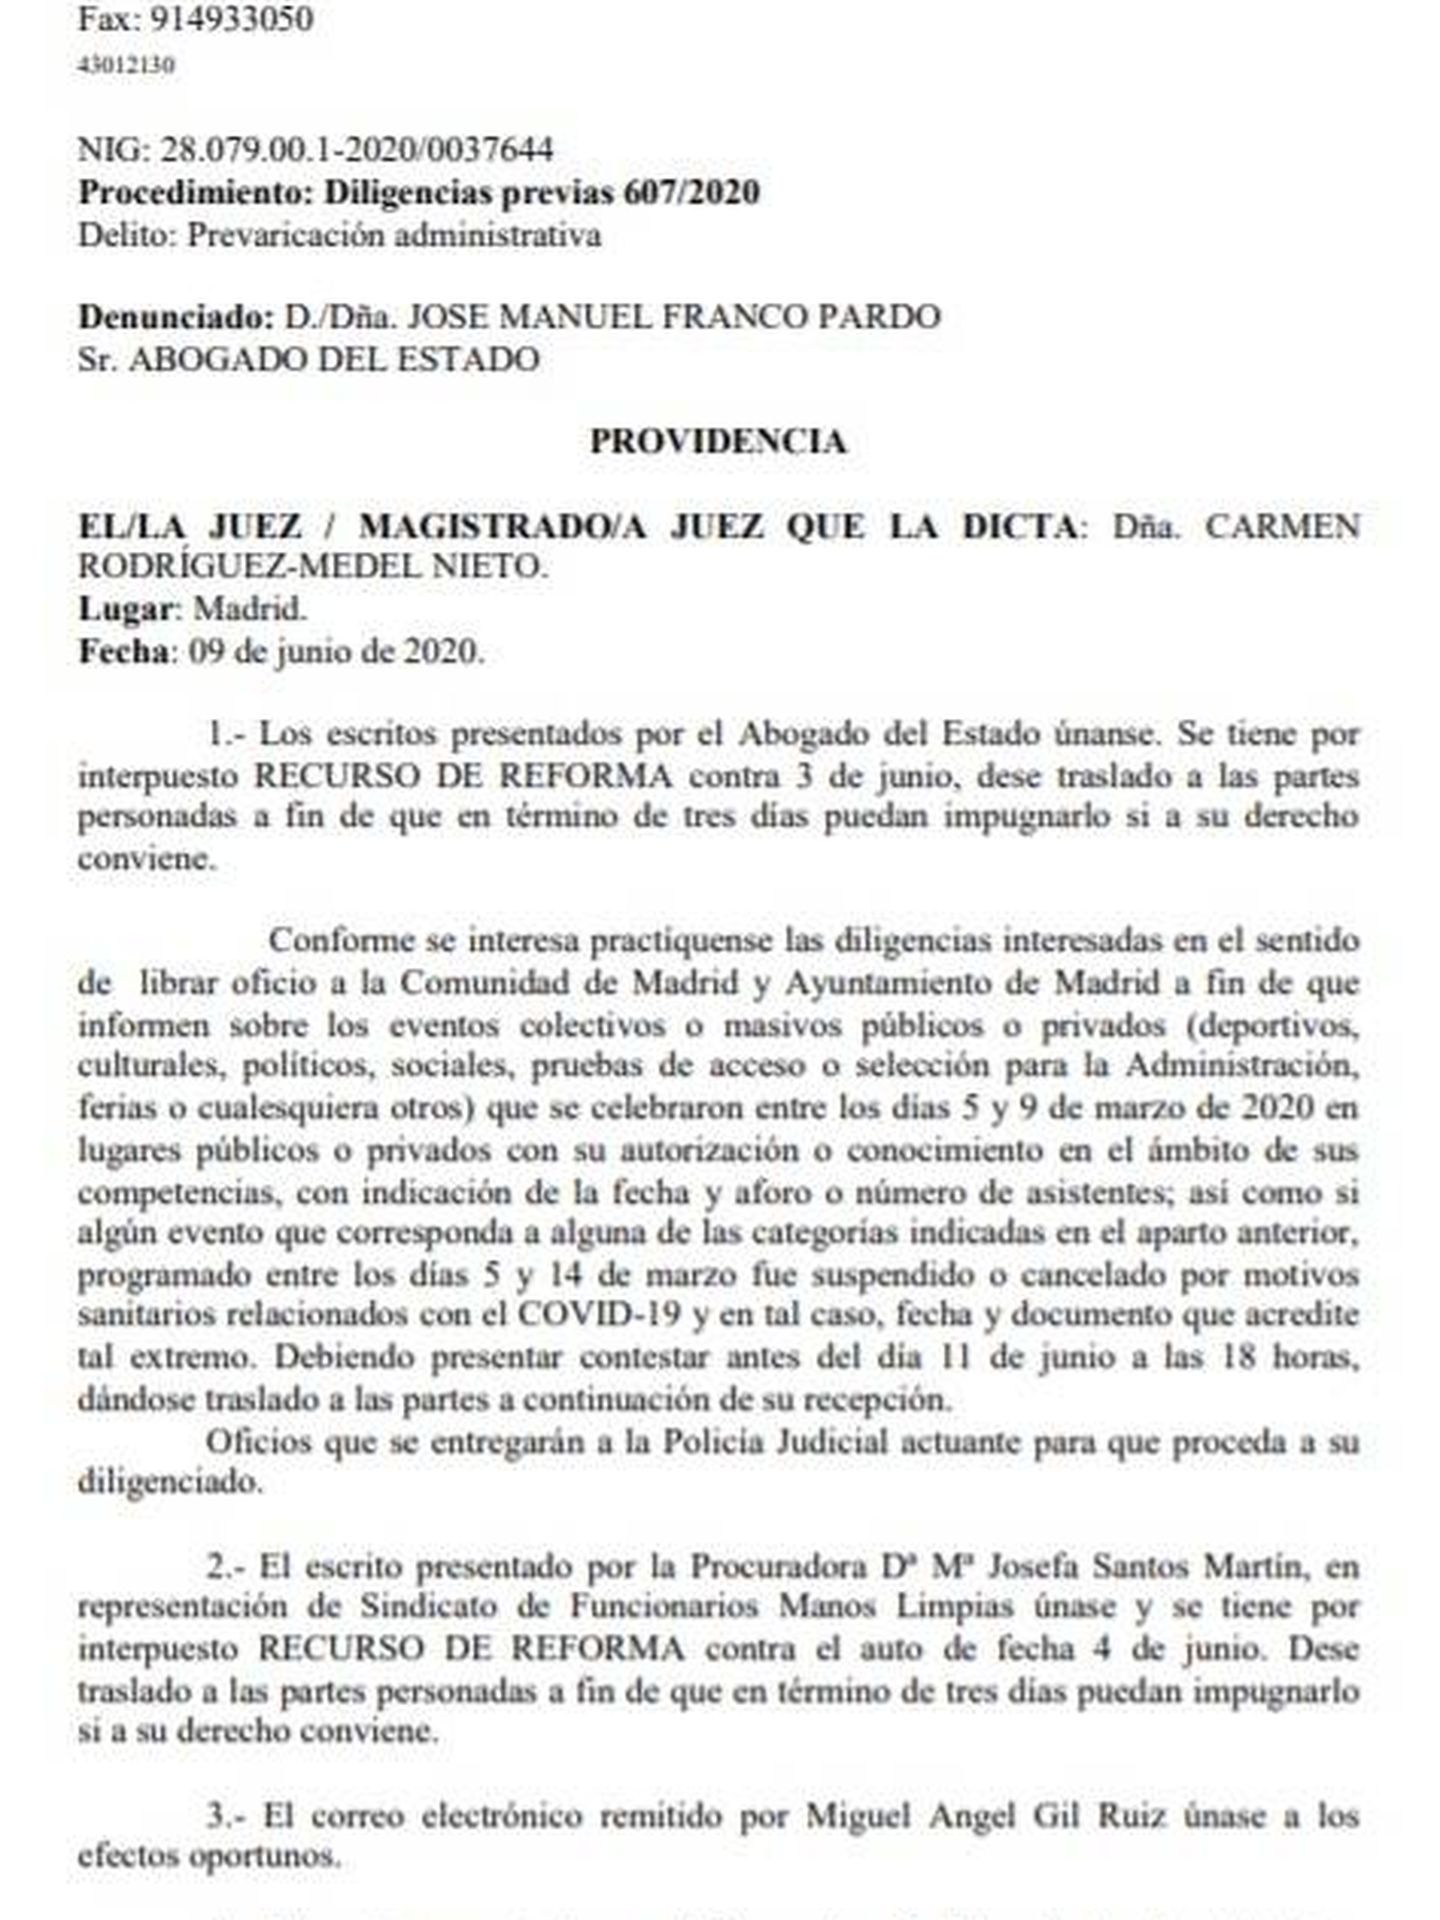 Consulte aquí en PDF la providencia de 9 de junio de 2020 de la jueza Carmen Rodríguez-Medel. 